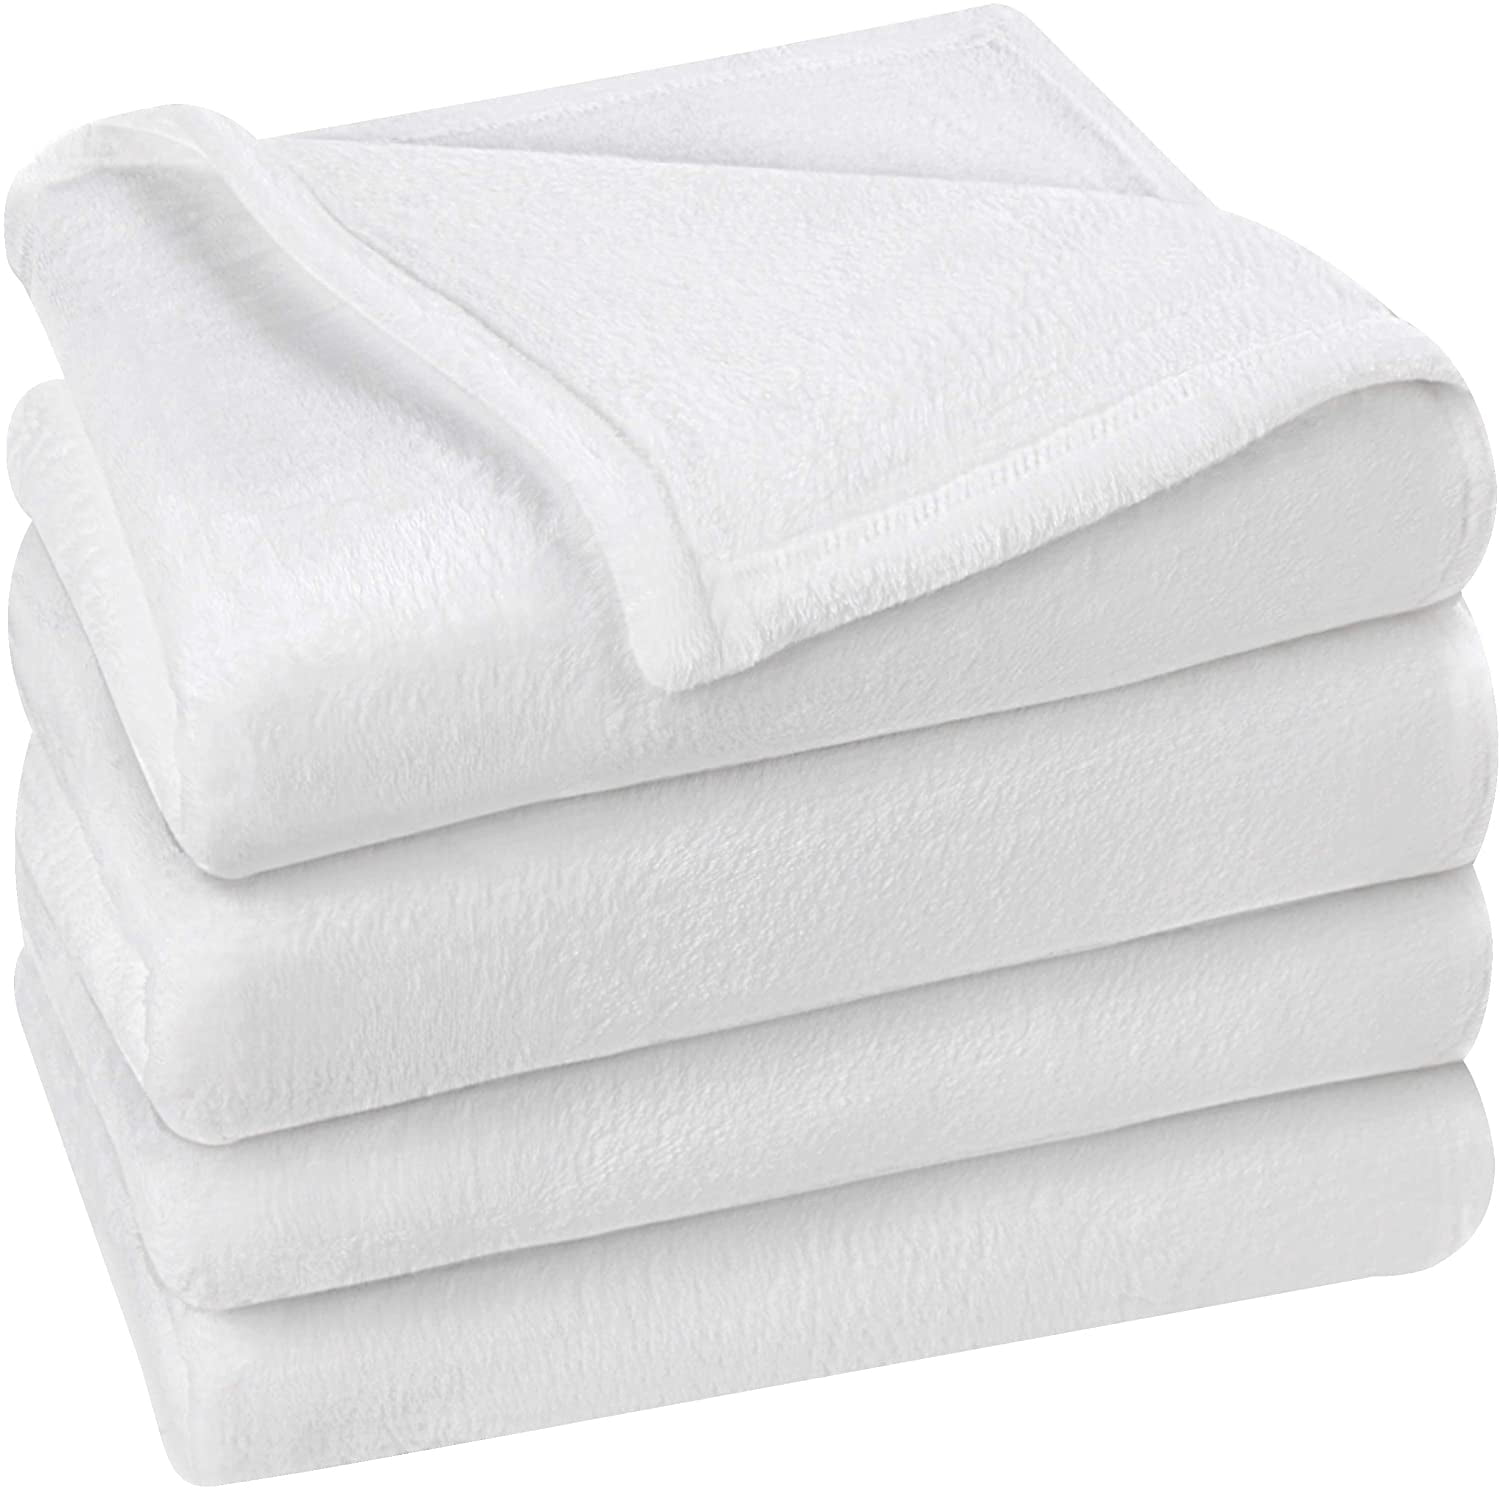 Utopia Bedding Fleece Blanket King Size Grey Luxury Bed Blanket Fuzzy Soft Blank 